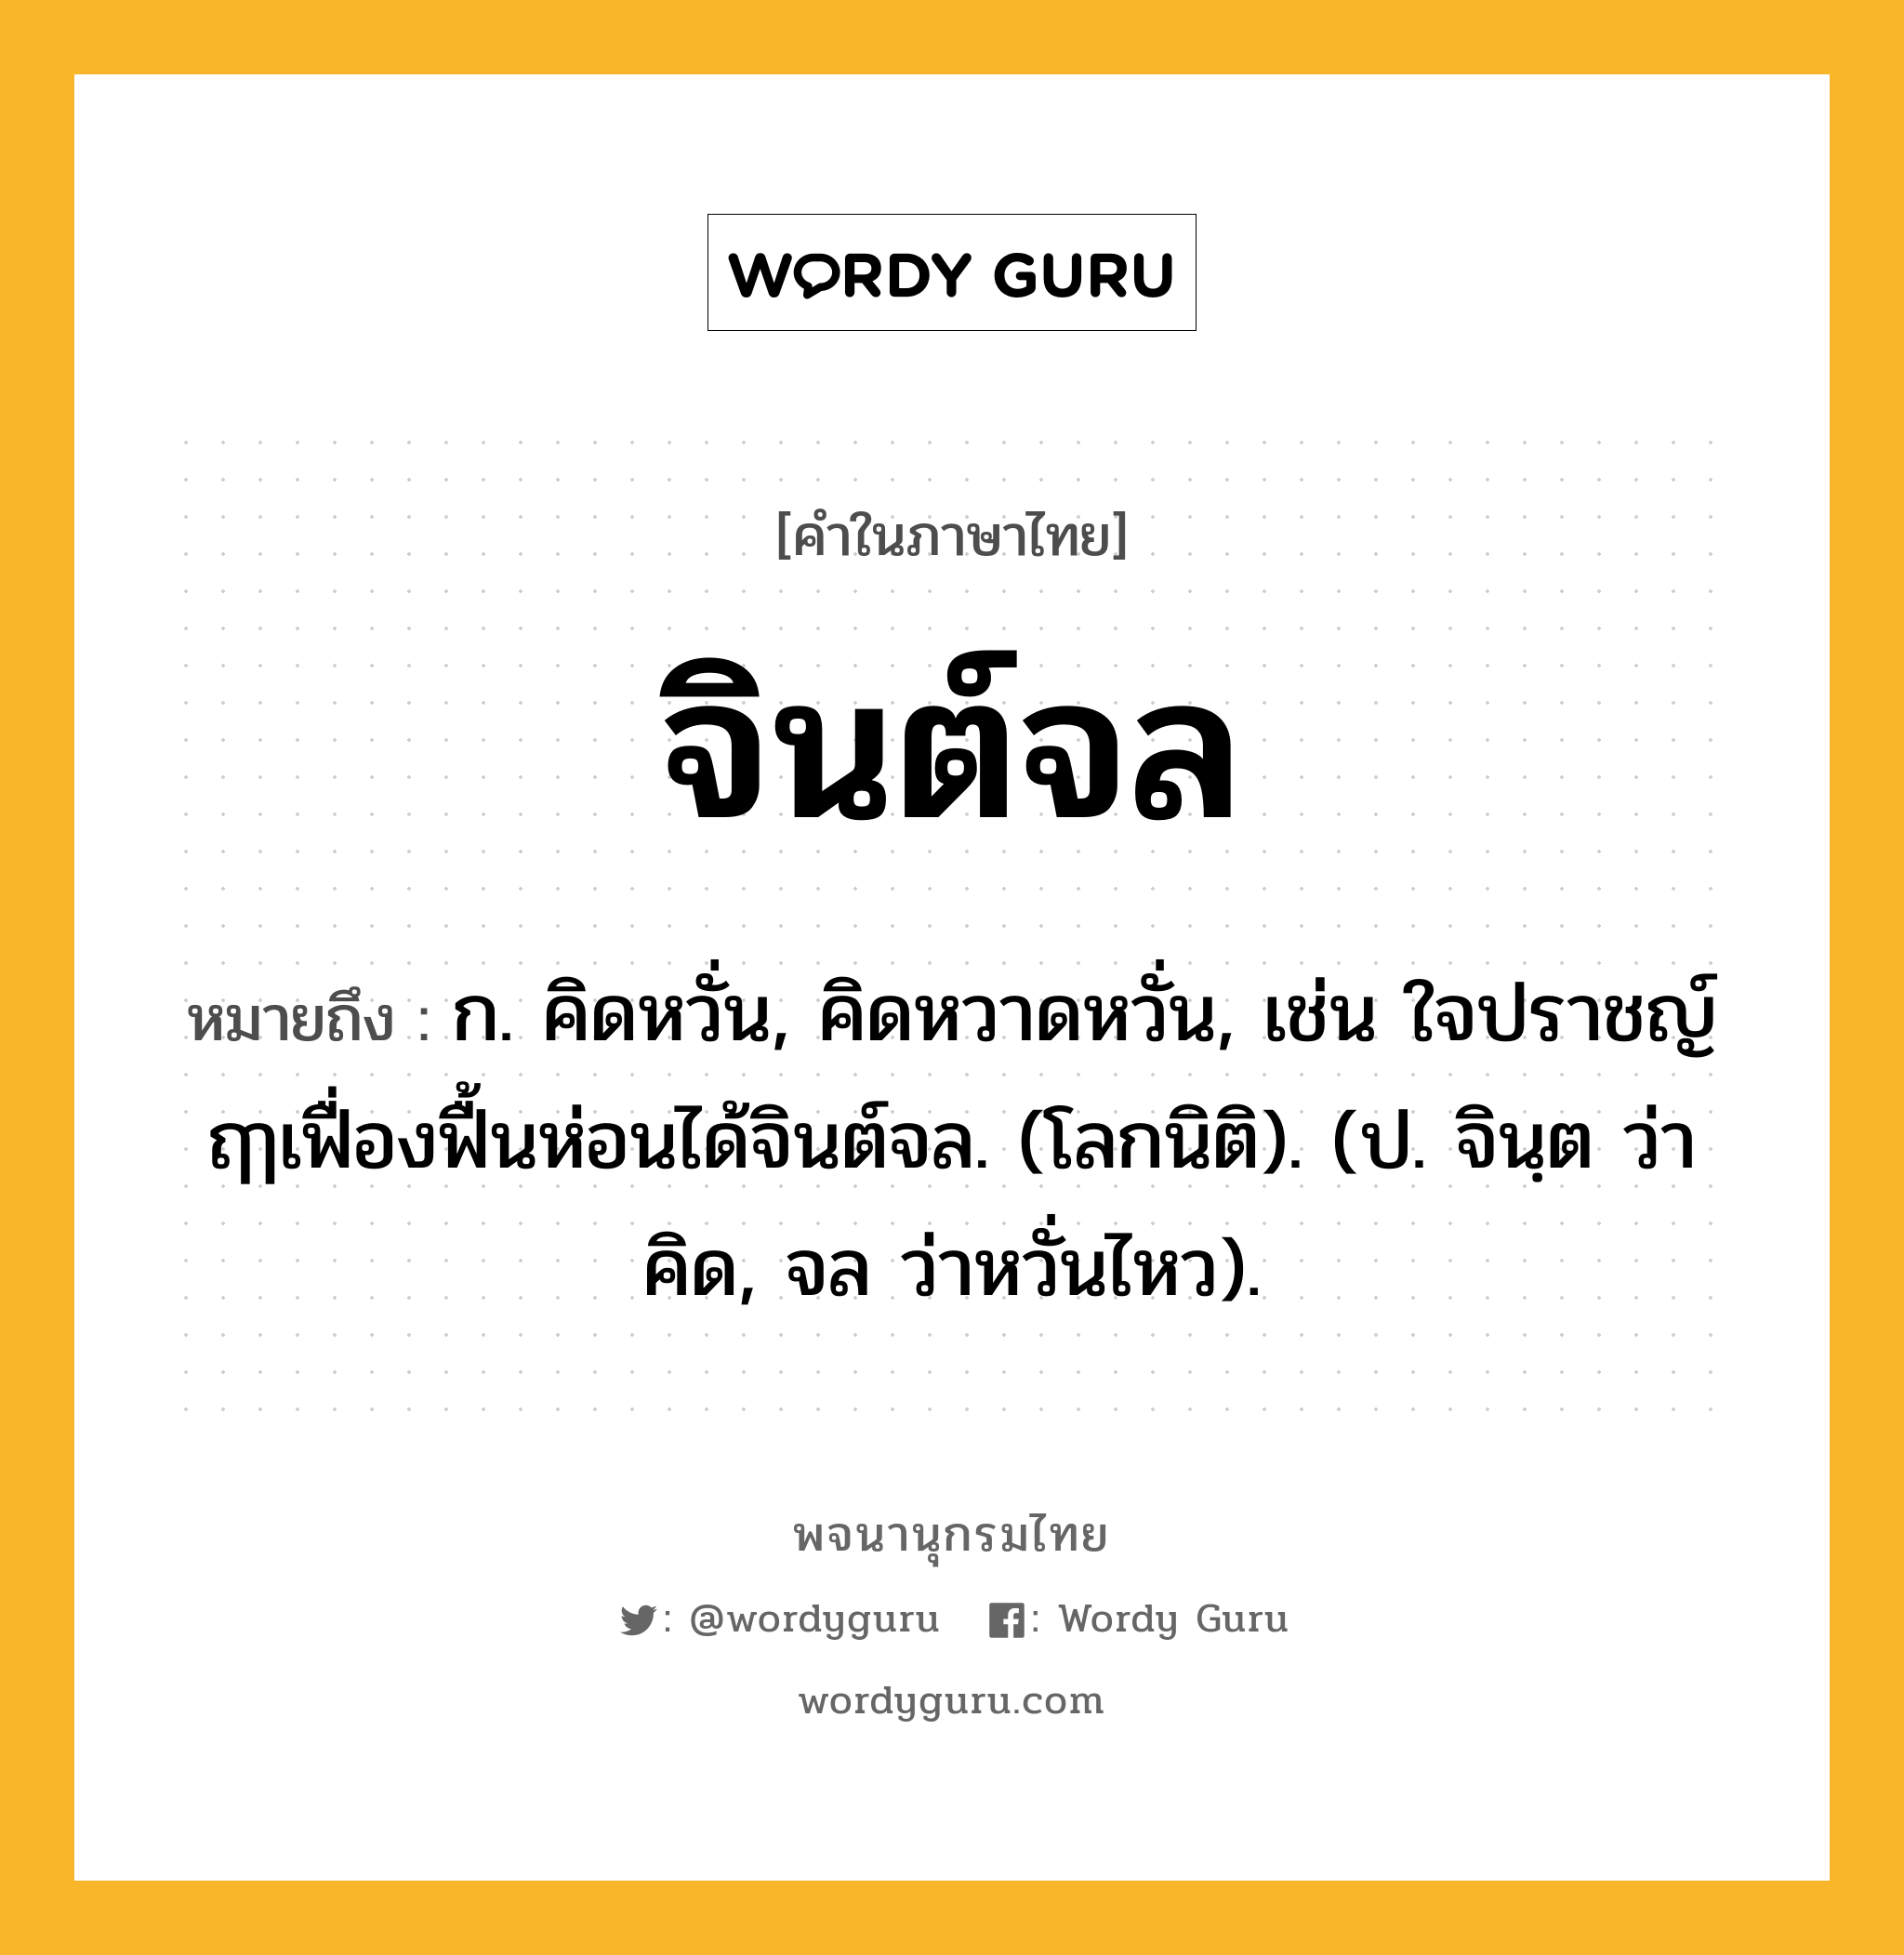 จินต์จล ความหมาย หมายถึงอะไร?, คำในภาษาไทย จินต์จล หมายถึง ก. คิดหวั่น, คิดหวาดหวั่น, เช่น ใจปราชญ์ฤๅเฟื่องฟื้นห่อนได้จินต์จล. (โลกนิติ). (ป. จินฺต ว่า คิด, จล ว่าหวั่นไหว).